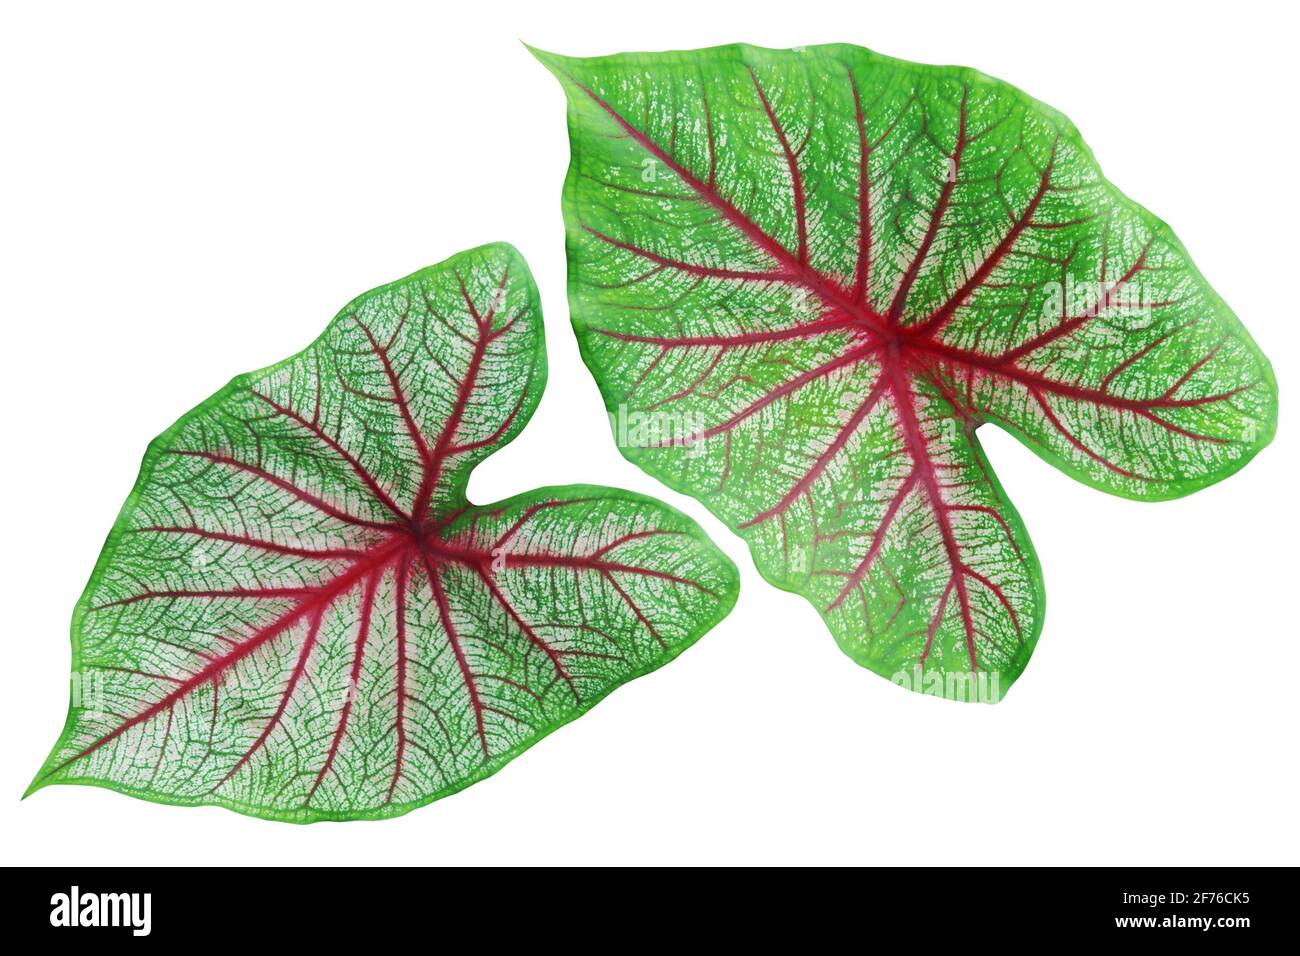 Grüne Blätter Rote Adern der Caladium-Pflanze isoliert auf Weiß Hintergrund  mit Beschneidungspfad Stockfotografie - Alamy